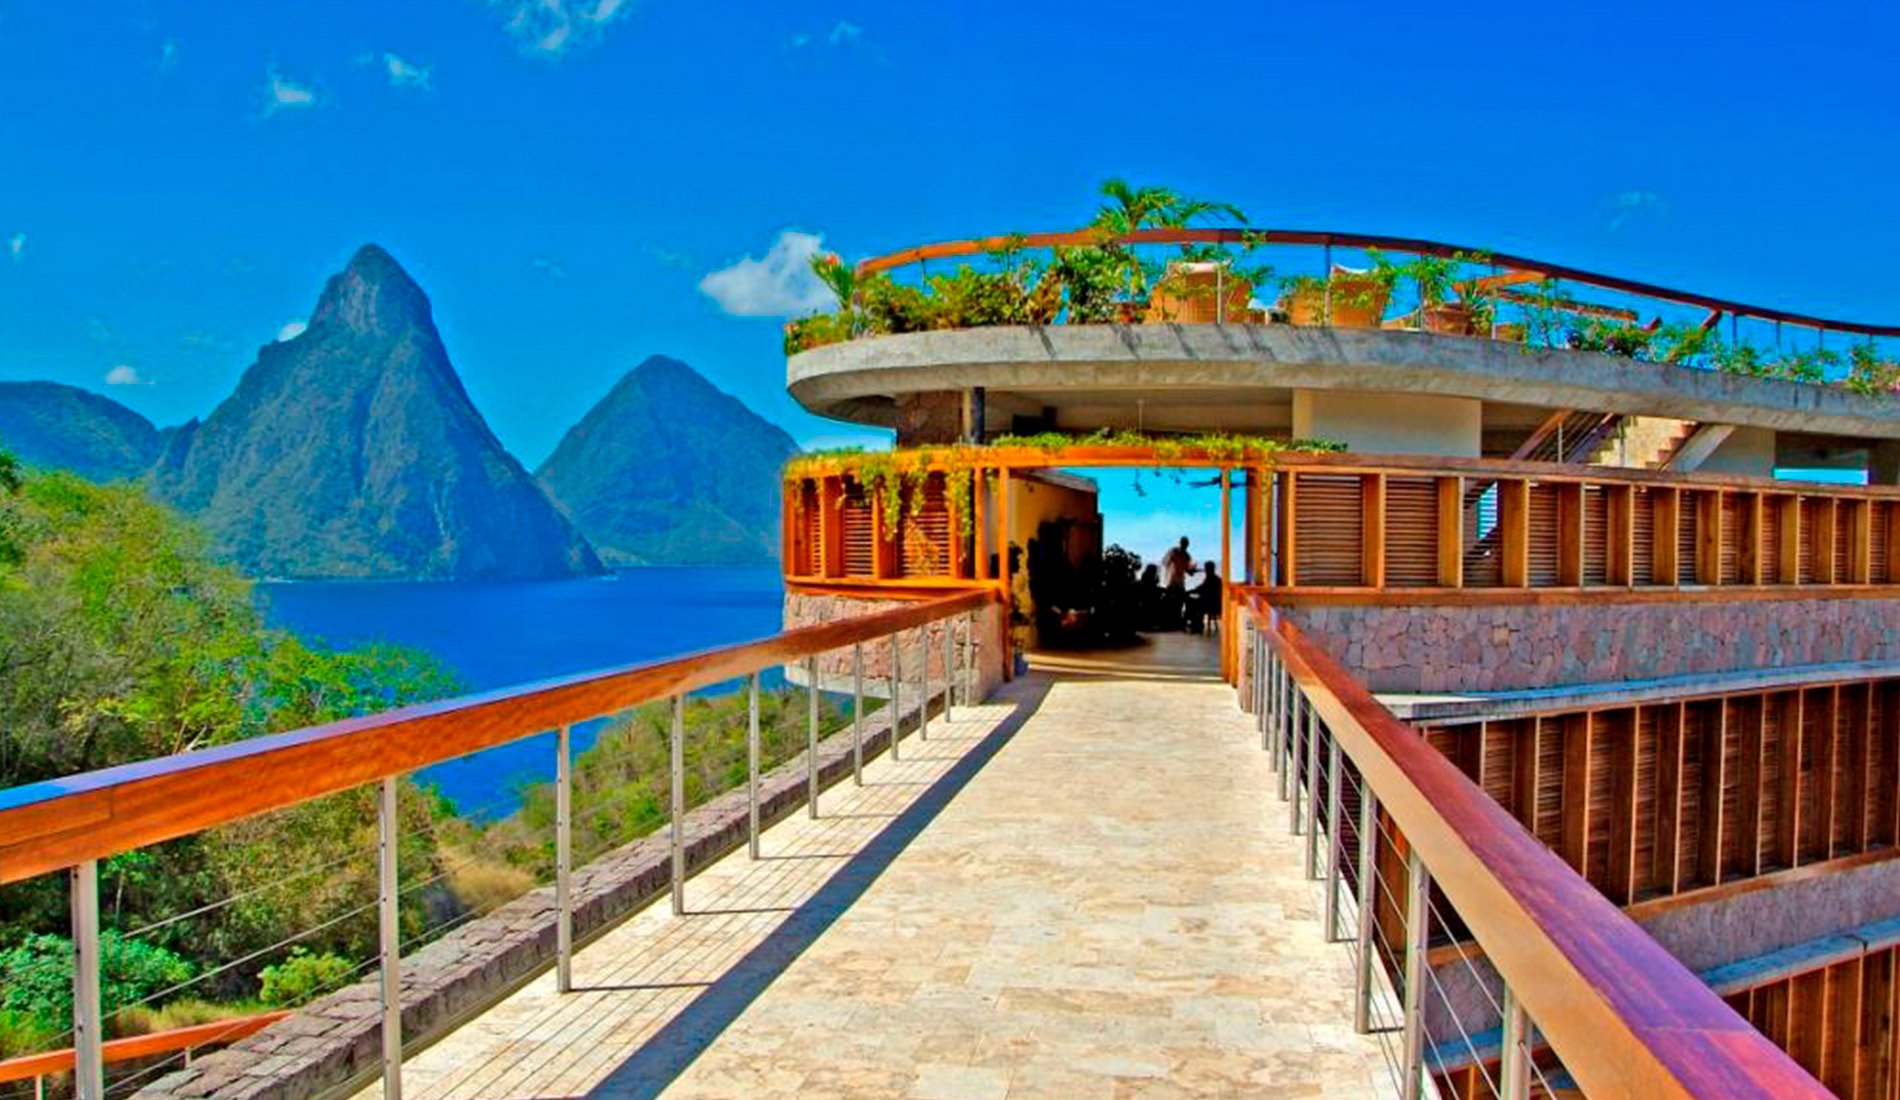 Hôtel de luxe Jade Mountain resort 5 étoiles Sainte-Lucie caraïbes vue du pont